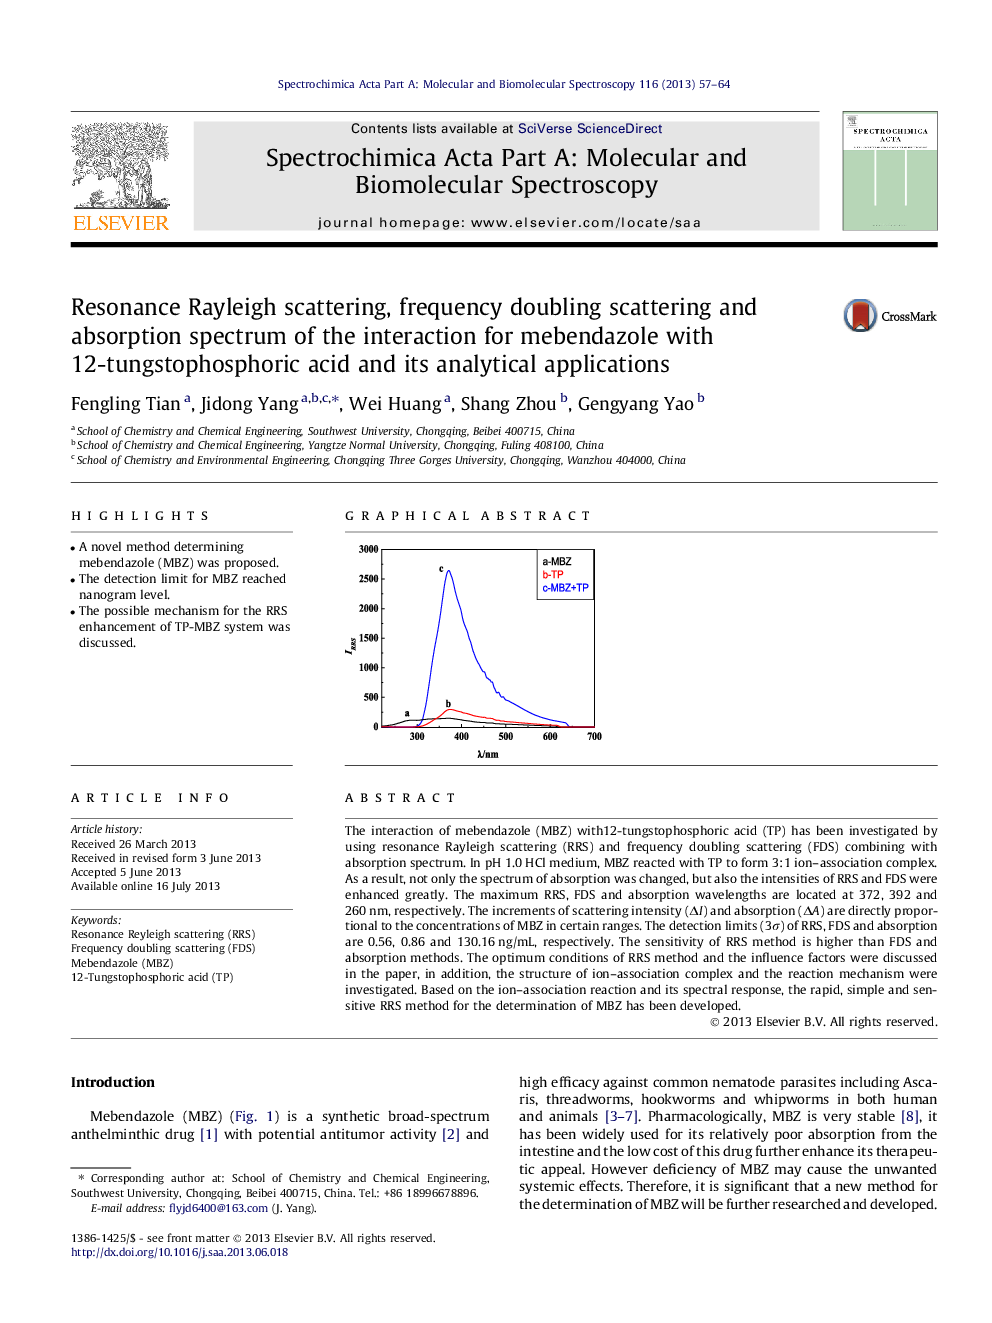 پراکندگی رزونانس ریلی، پراکندگی دو برابر شدن فرکانس و طیف جذبی از تعامل برای ماندندازول با اسید 12 تنگستوفسفریک و برنامه های کاربردی آن 